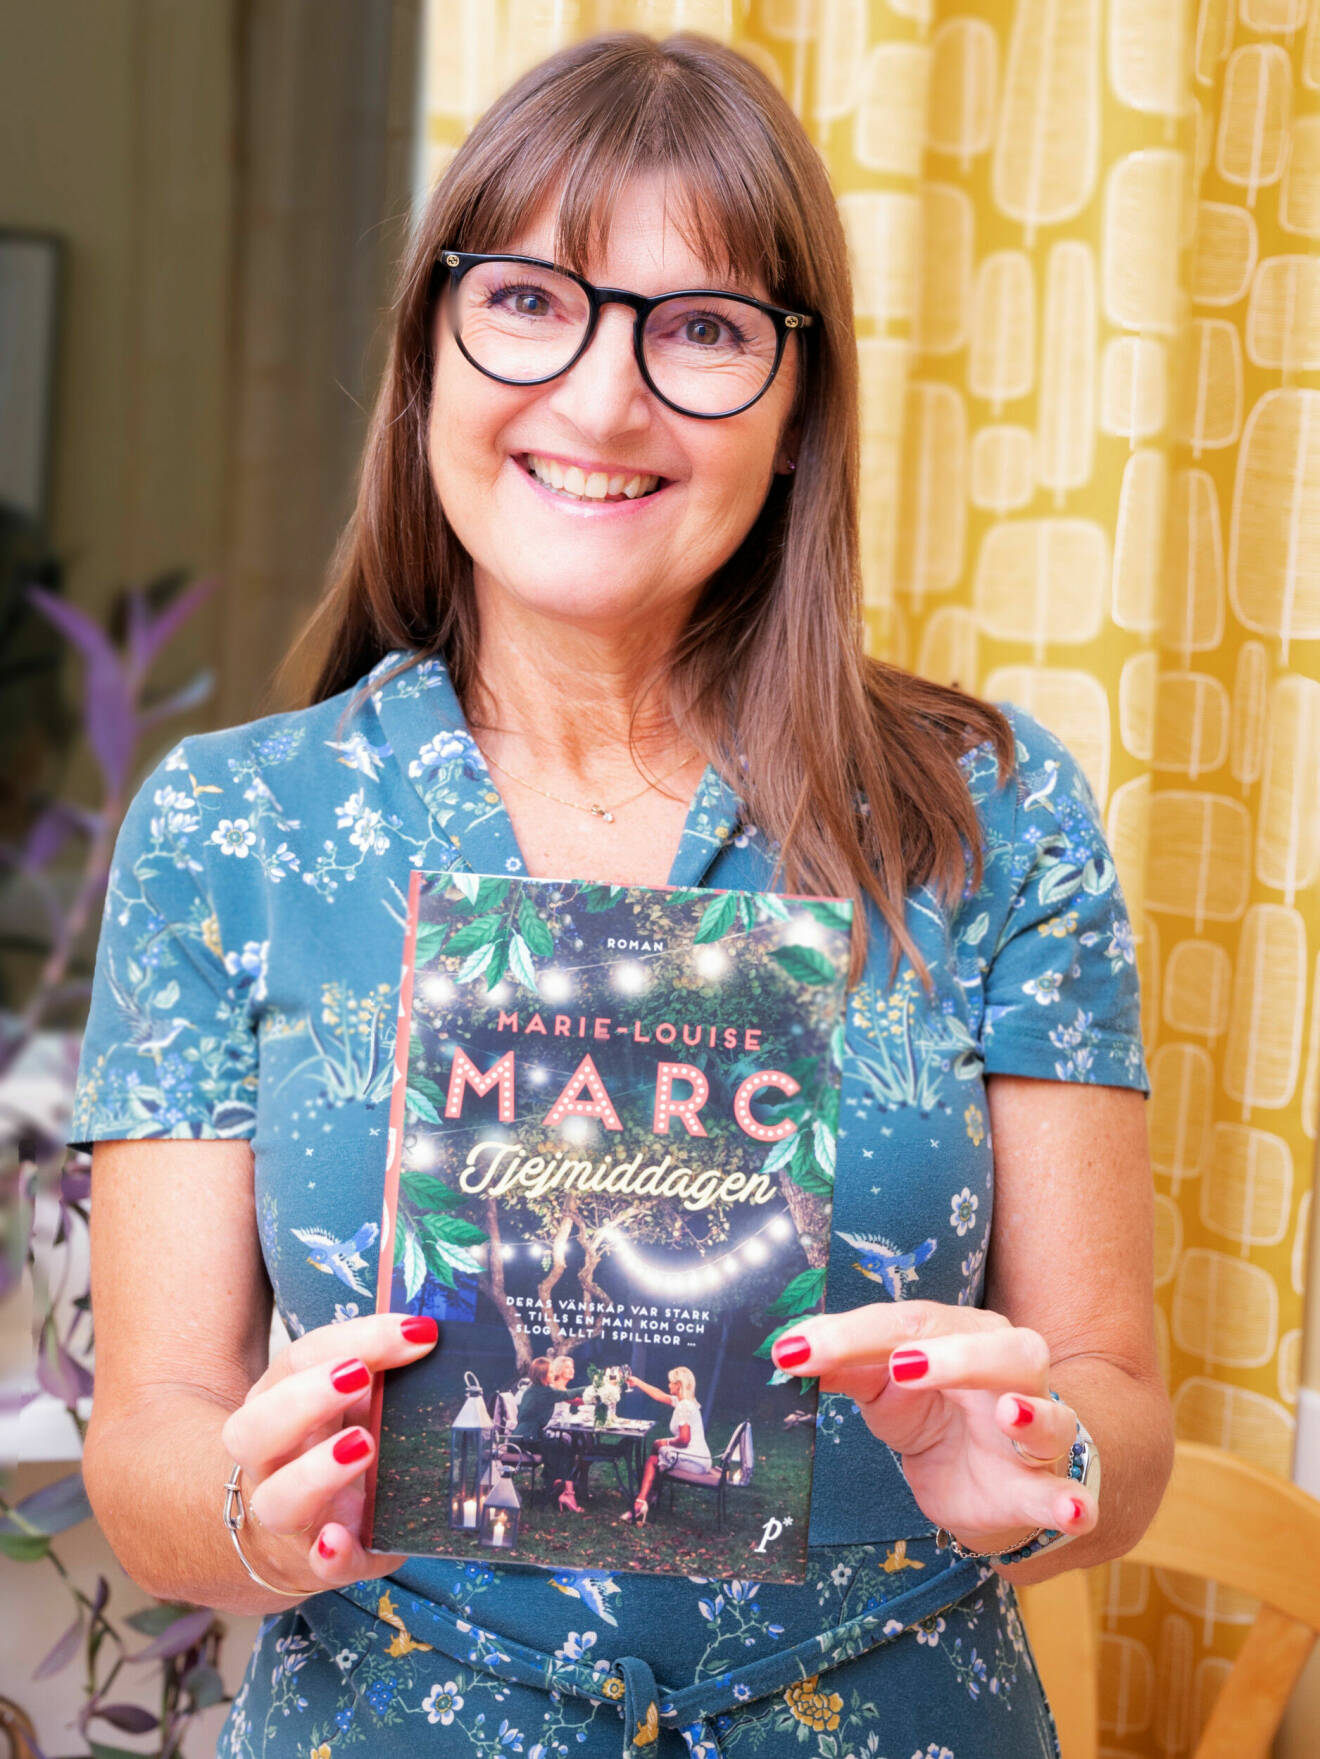 Marie-Louise Marc med sin bok Tjejmiddagen.